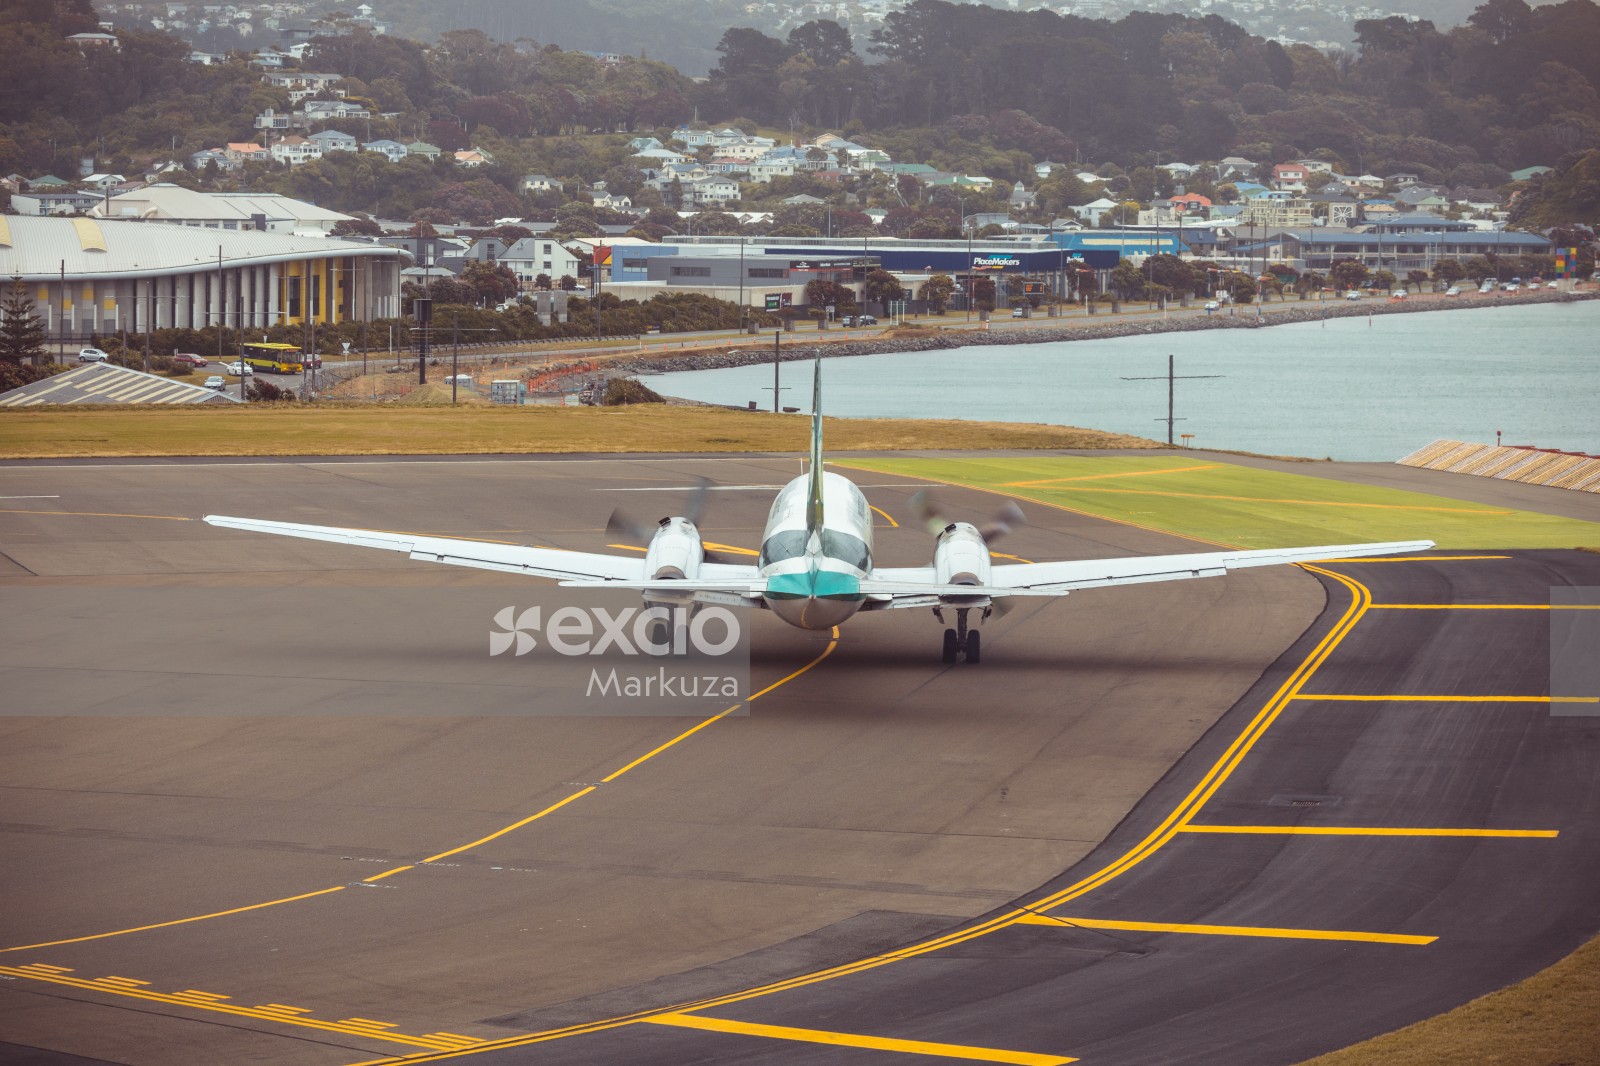 AIR Chathams aircraft taxiing